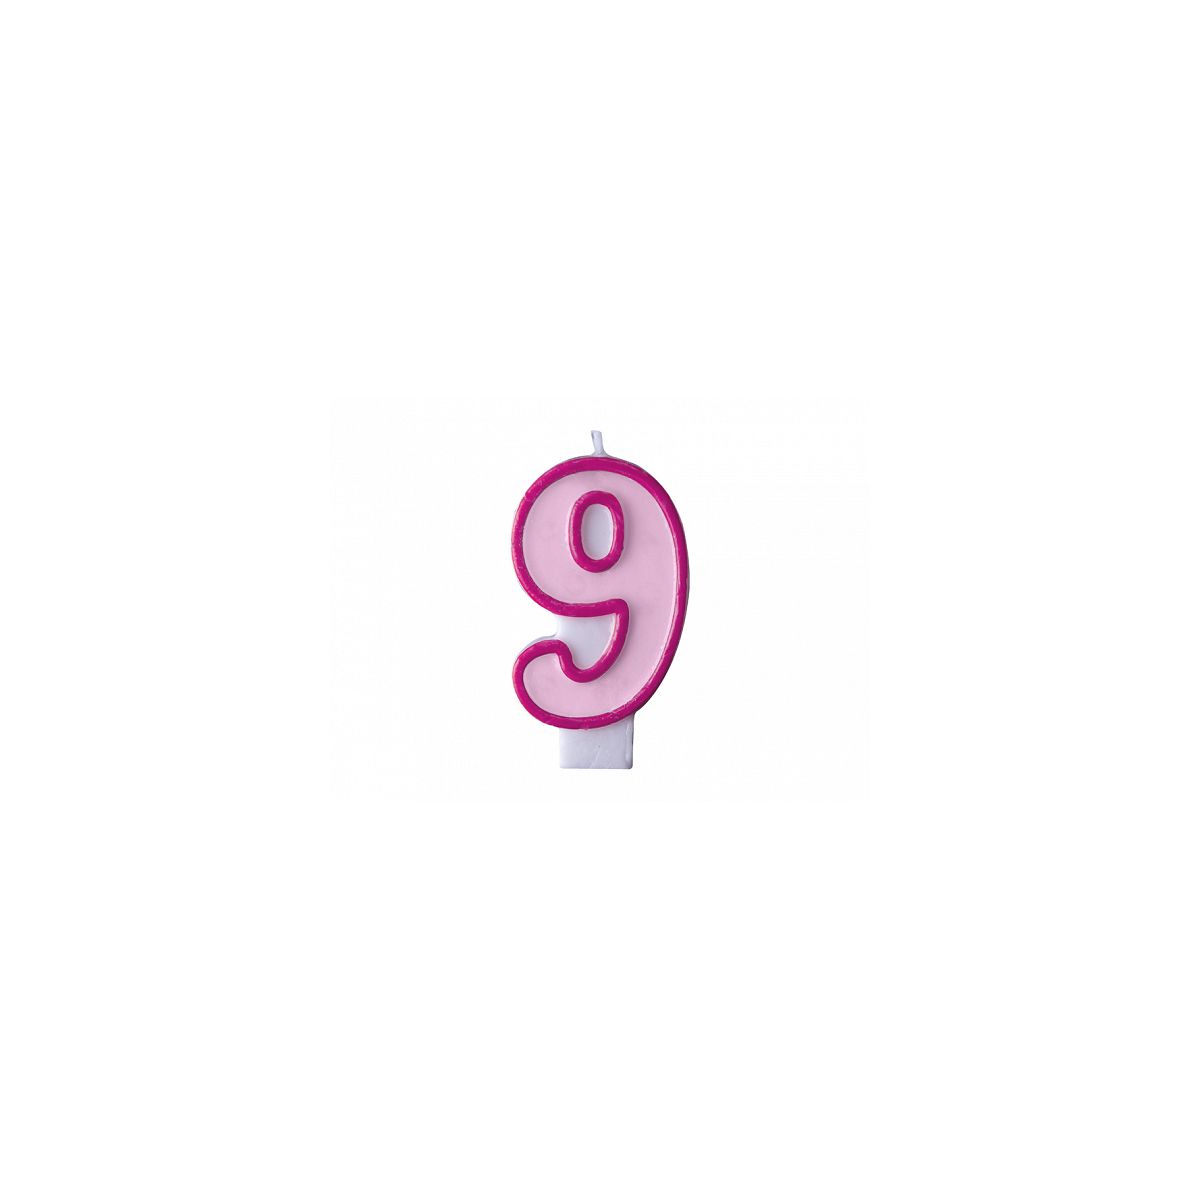 Świeczka urodzinowa Cyferka 9 w kolorze różowym 7 centymetrów Partydeco (SCU1-9-006)